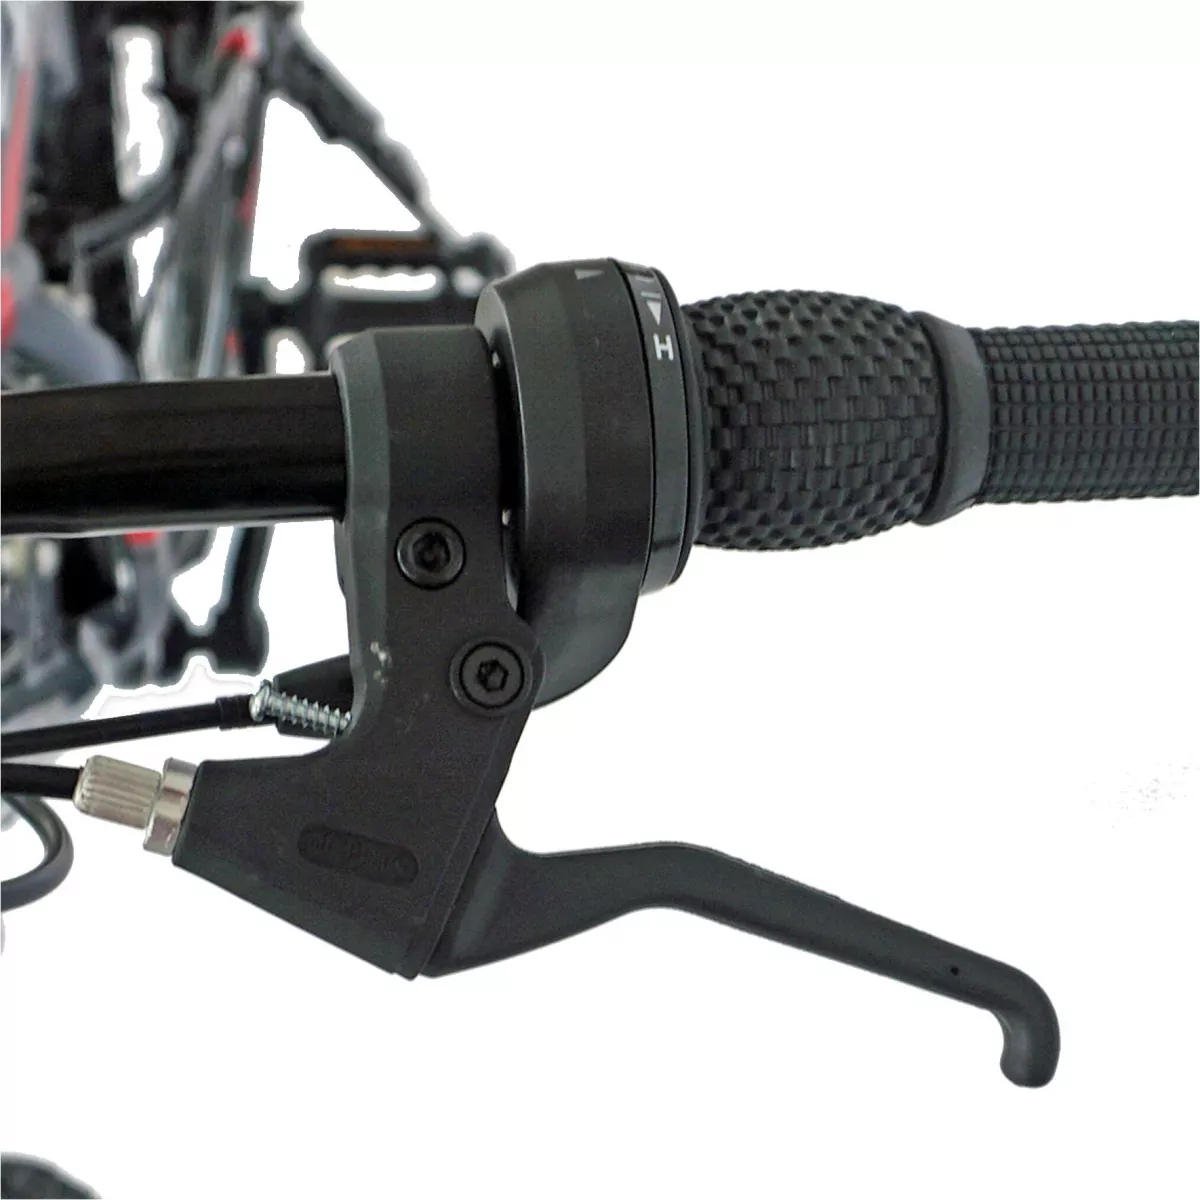 Bicicleta MTB-FS  26" CARPAT ZTX C2642A, 18 viteze, culoare  gri/rosu - RESIGILATA